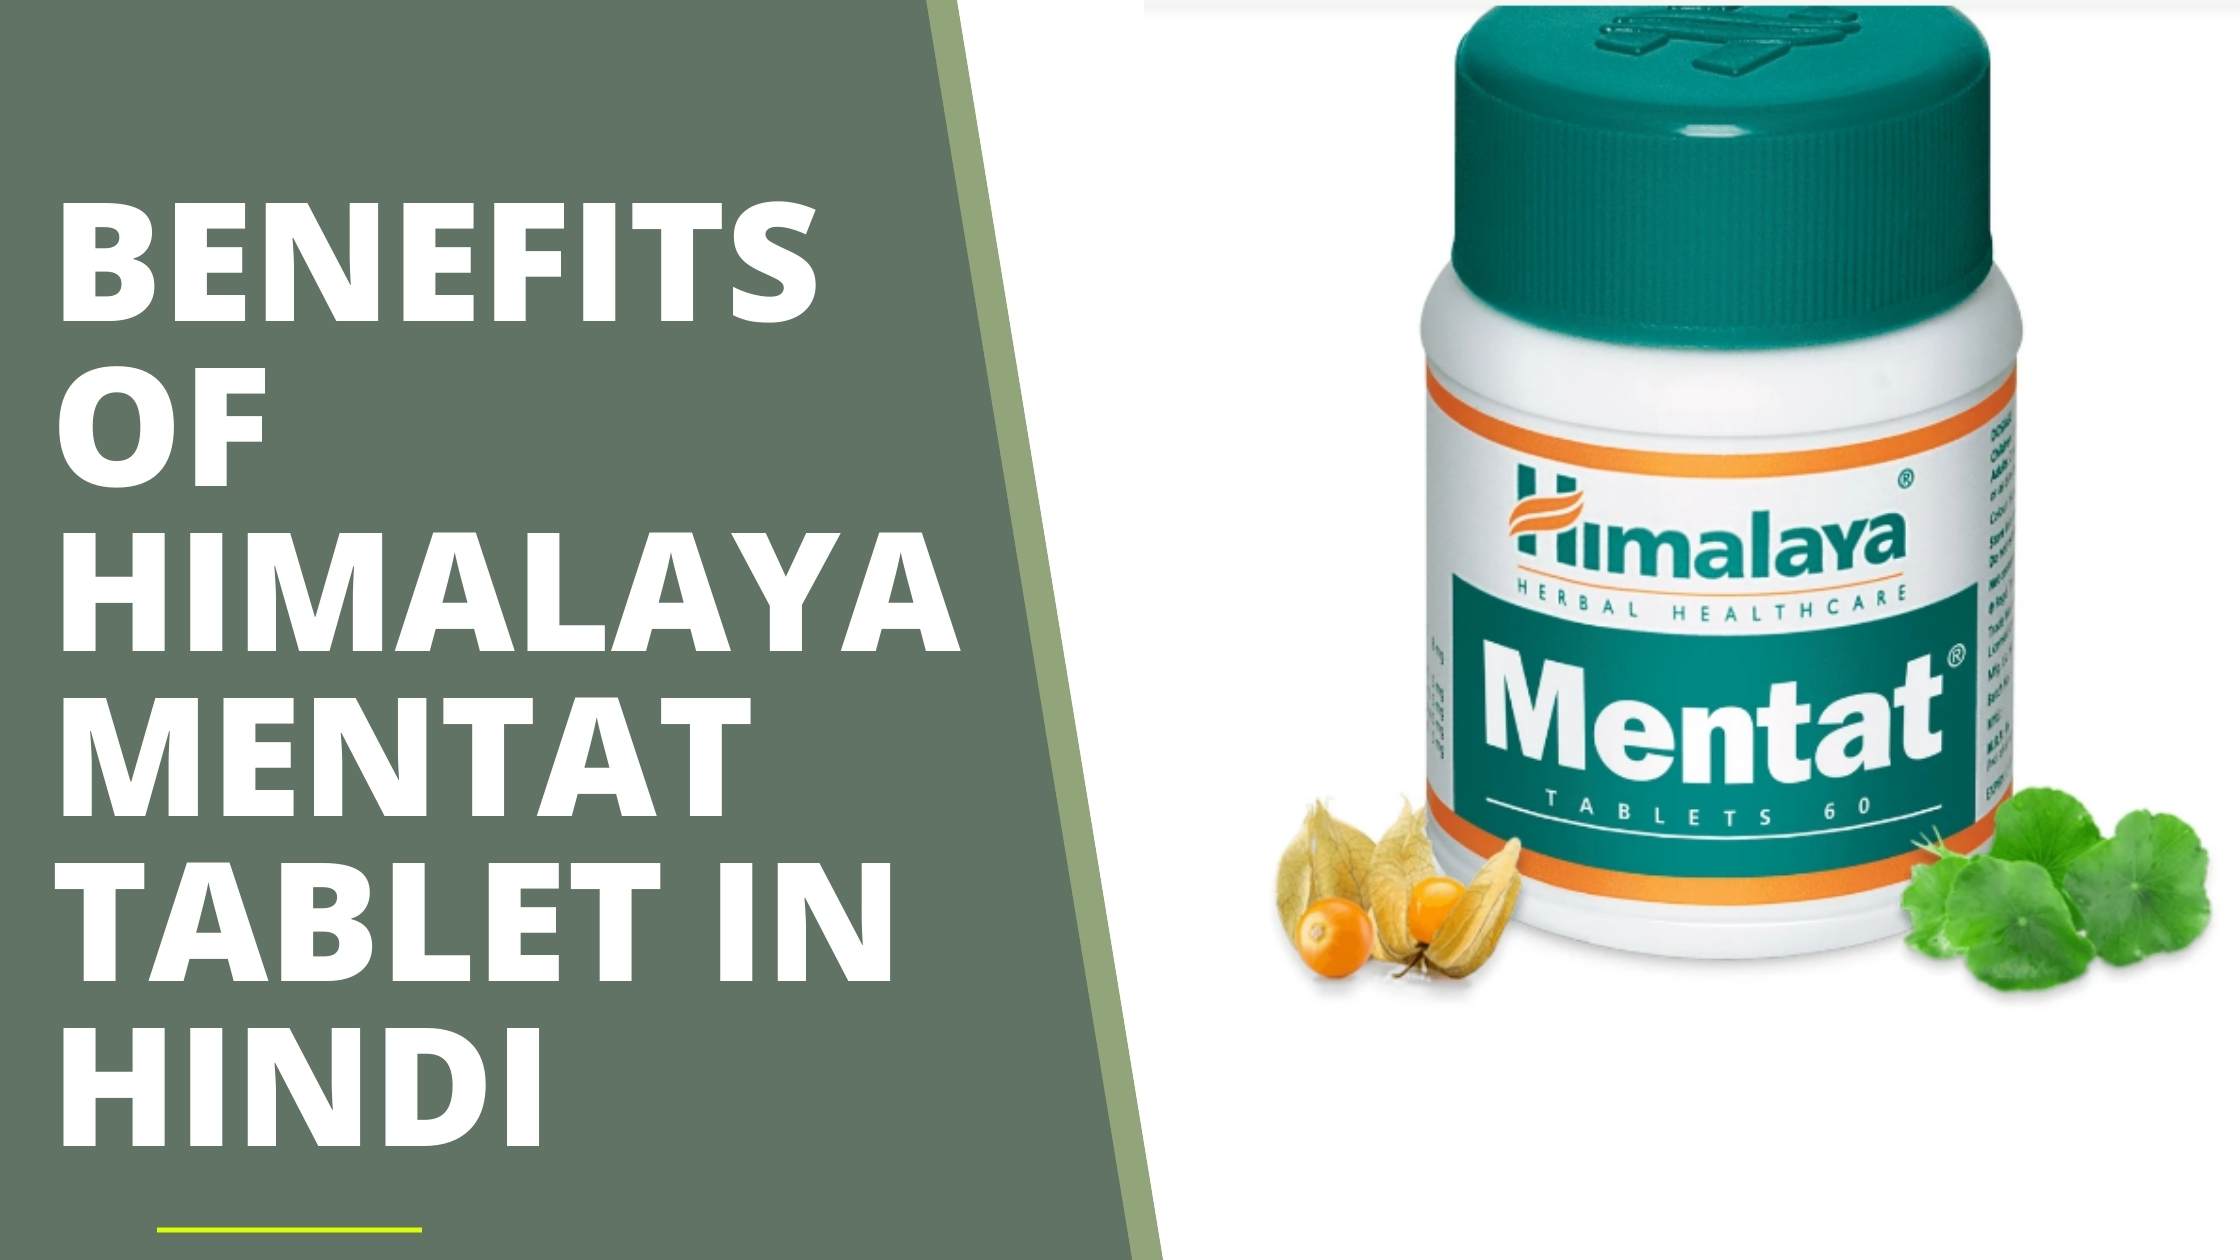 Benefits of himalaya mentat tablet in hindi